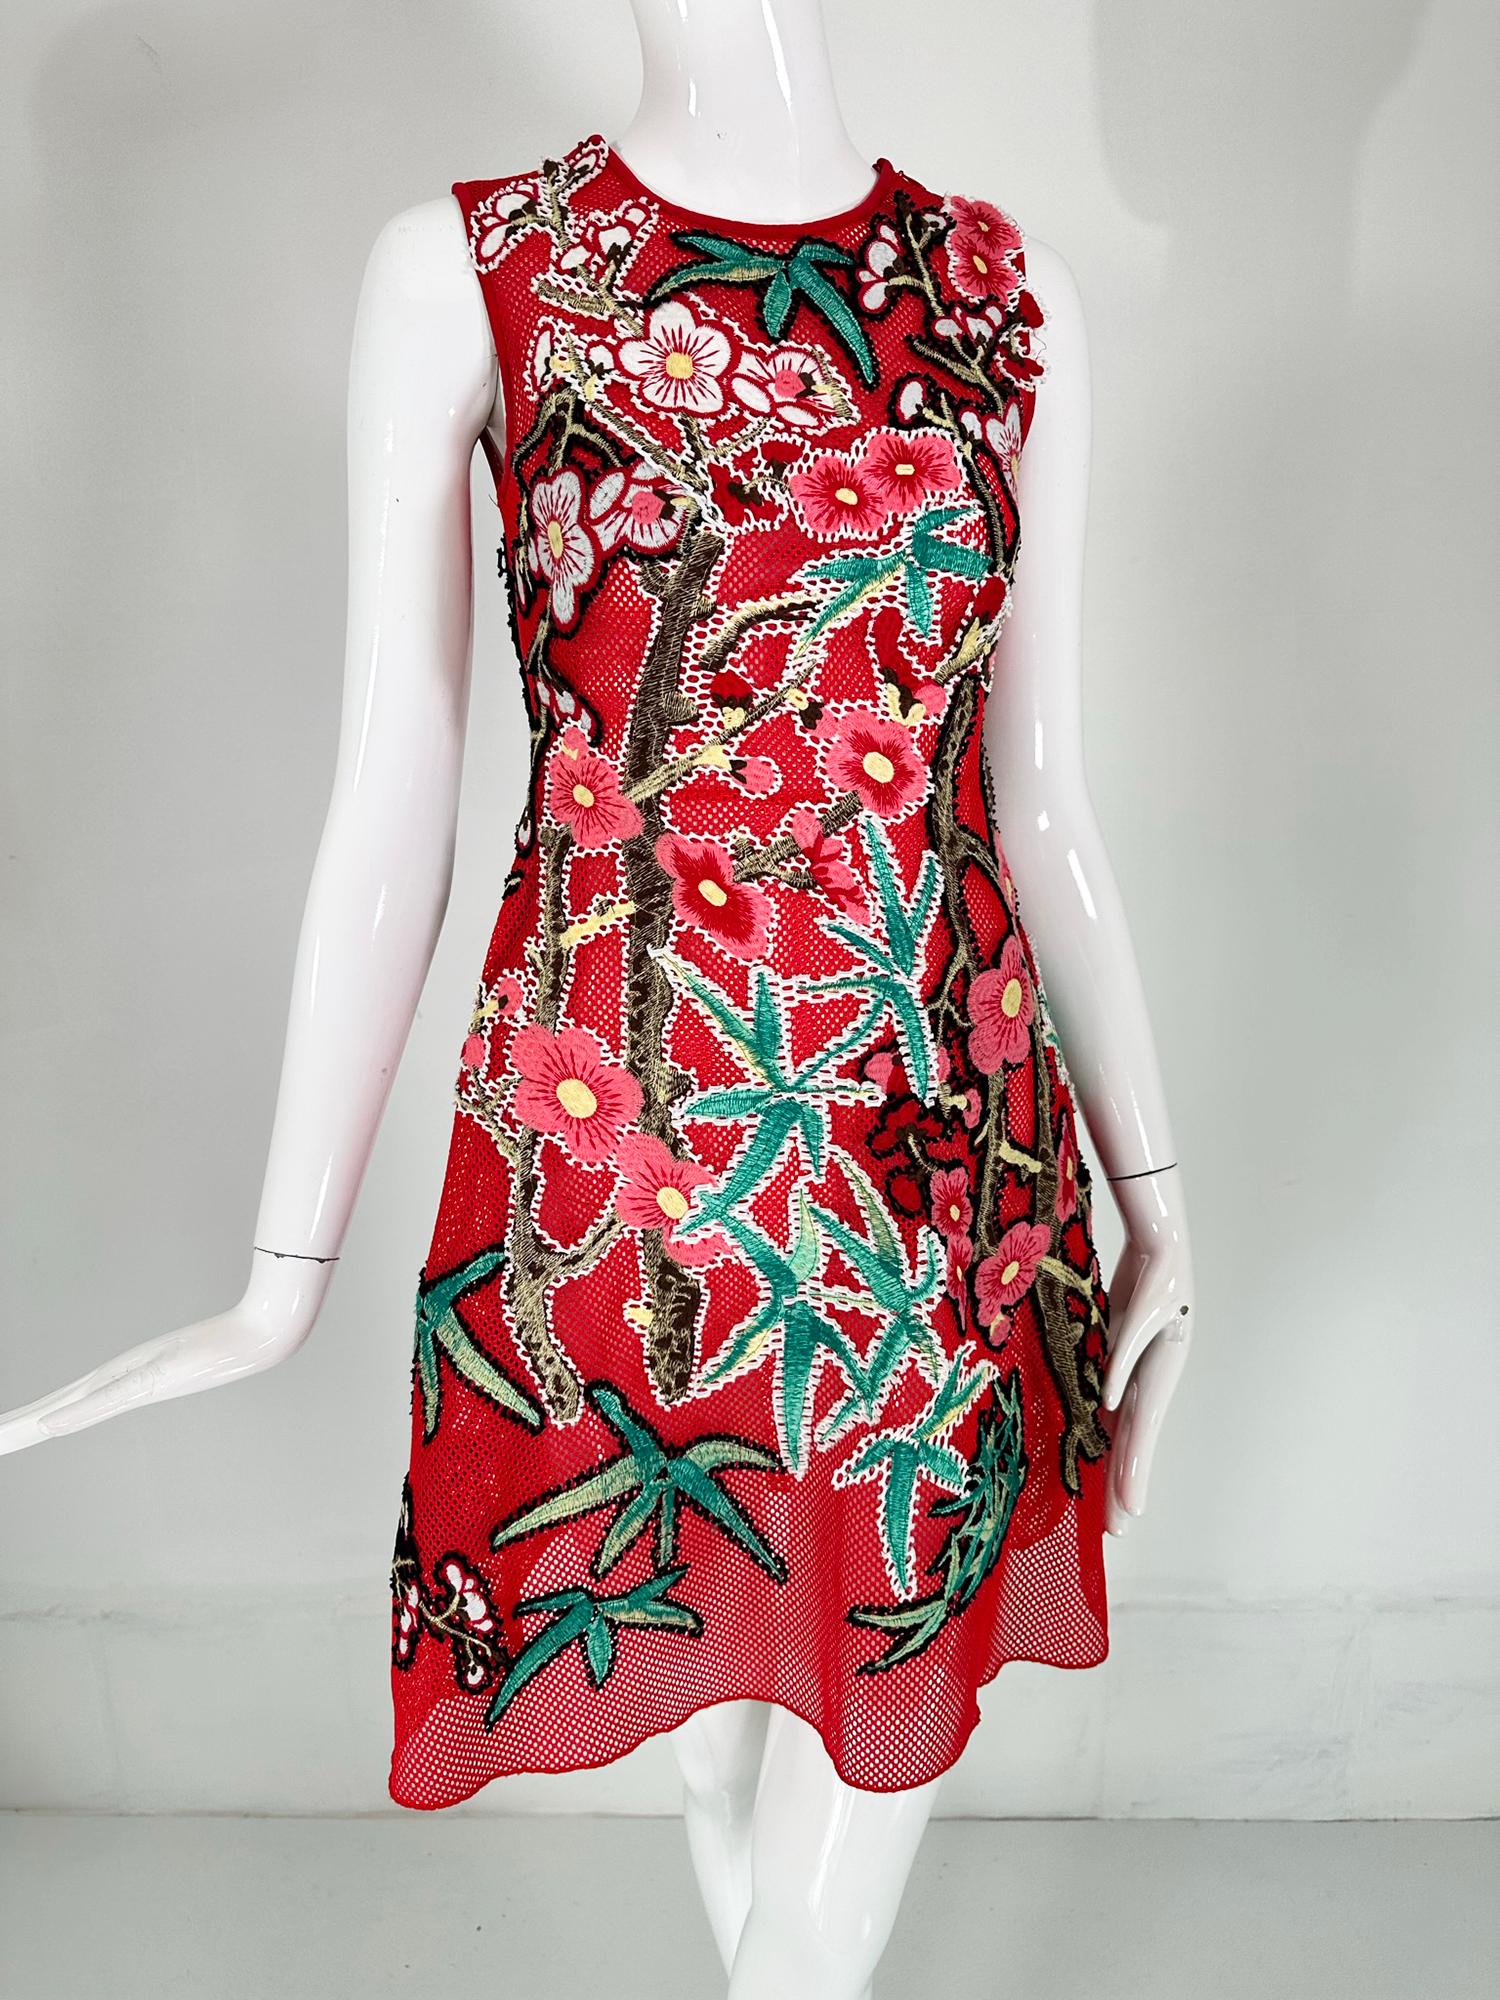 Vivienne Tam abstraktes rotes Netzkleid mit Applikationen XS. Jewell Neck, ärmelloses Kleid aus offenem rotem Mesh, das mit abstrakten Formen appliziert ist, die an Sternfische & und Blumen erinnern können. Das leuchtend bunte Kleid ist ein kleines